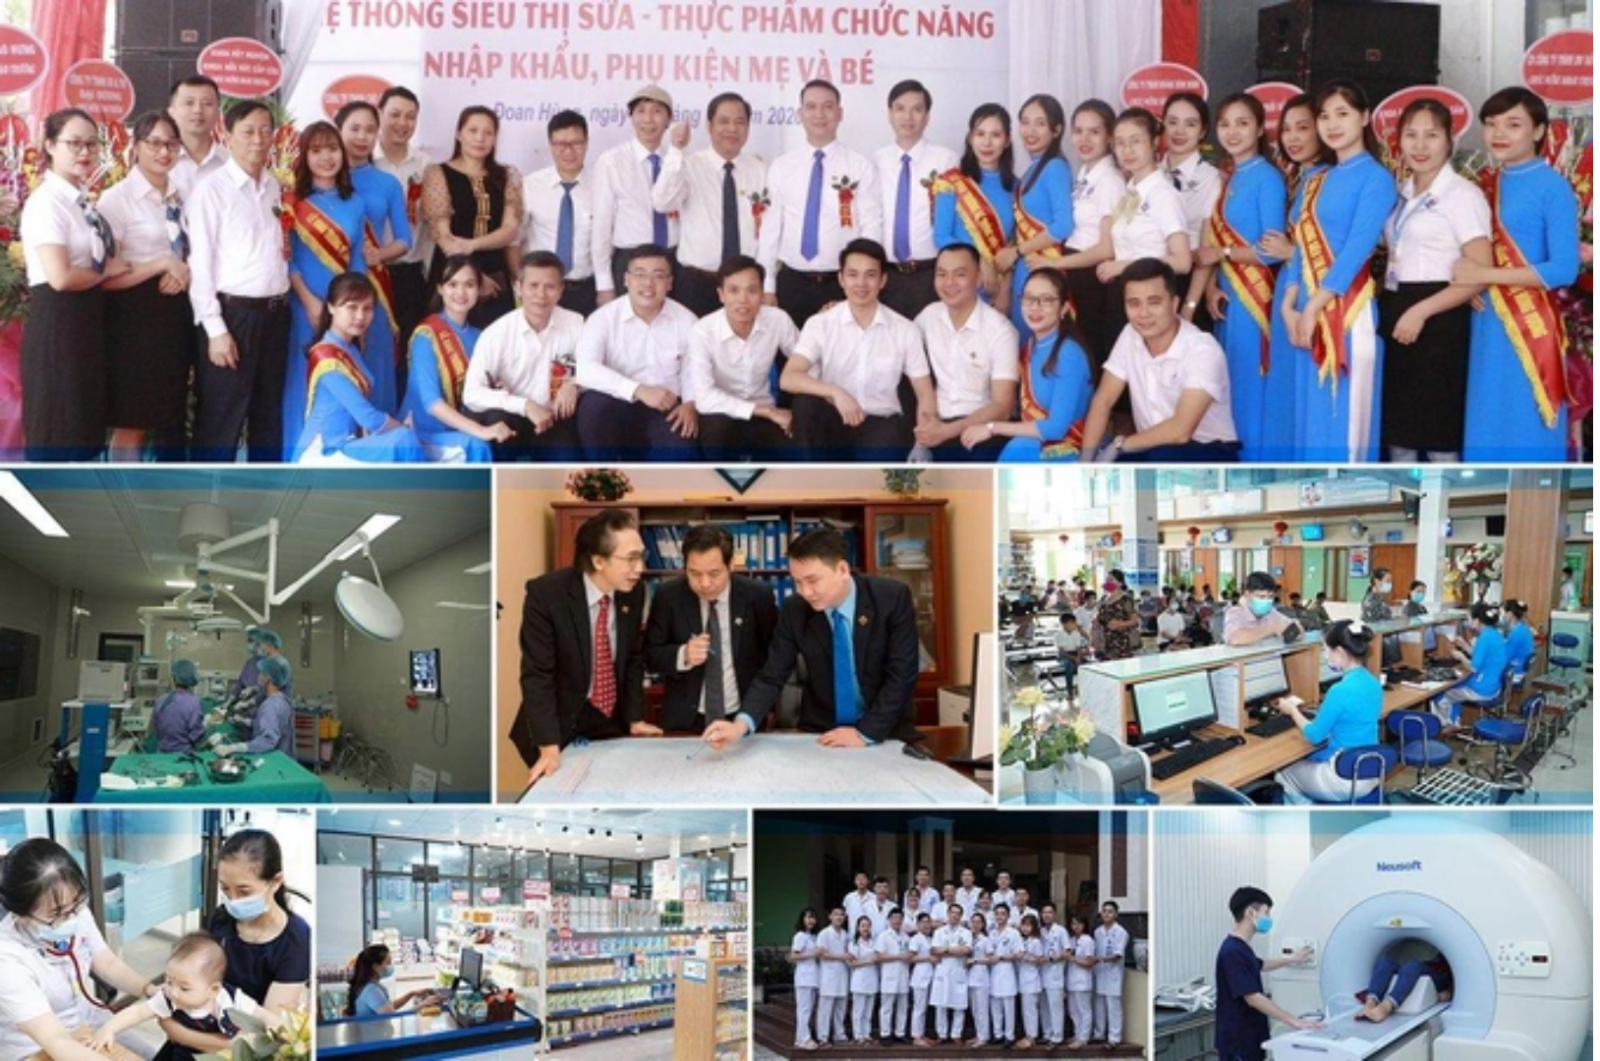 Bệnh viện Hùng Vương và đội ngũ y bác sĩ, cán bộ, nhân viên trình độ cao, giàu y đức cùng cơ sở vật chất hiện đại.